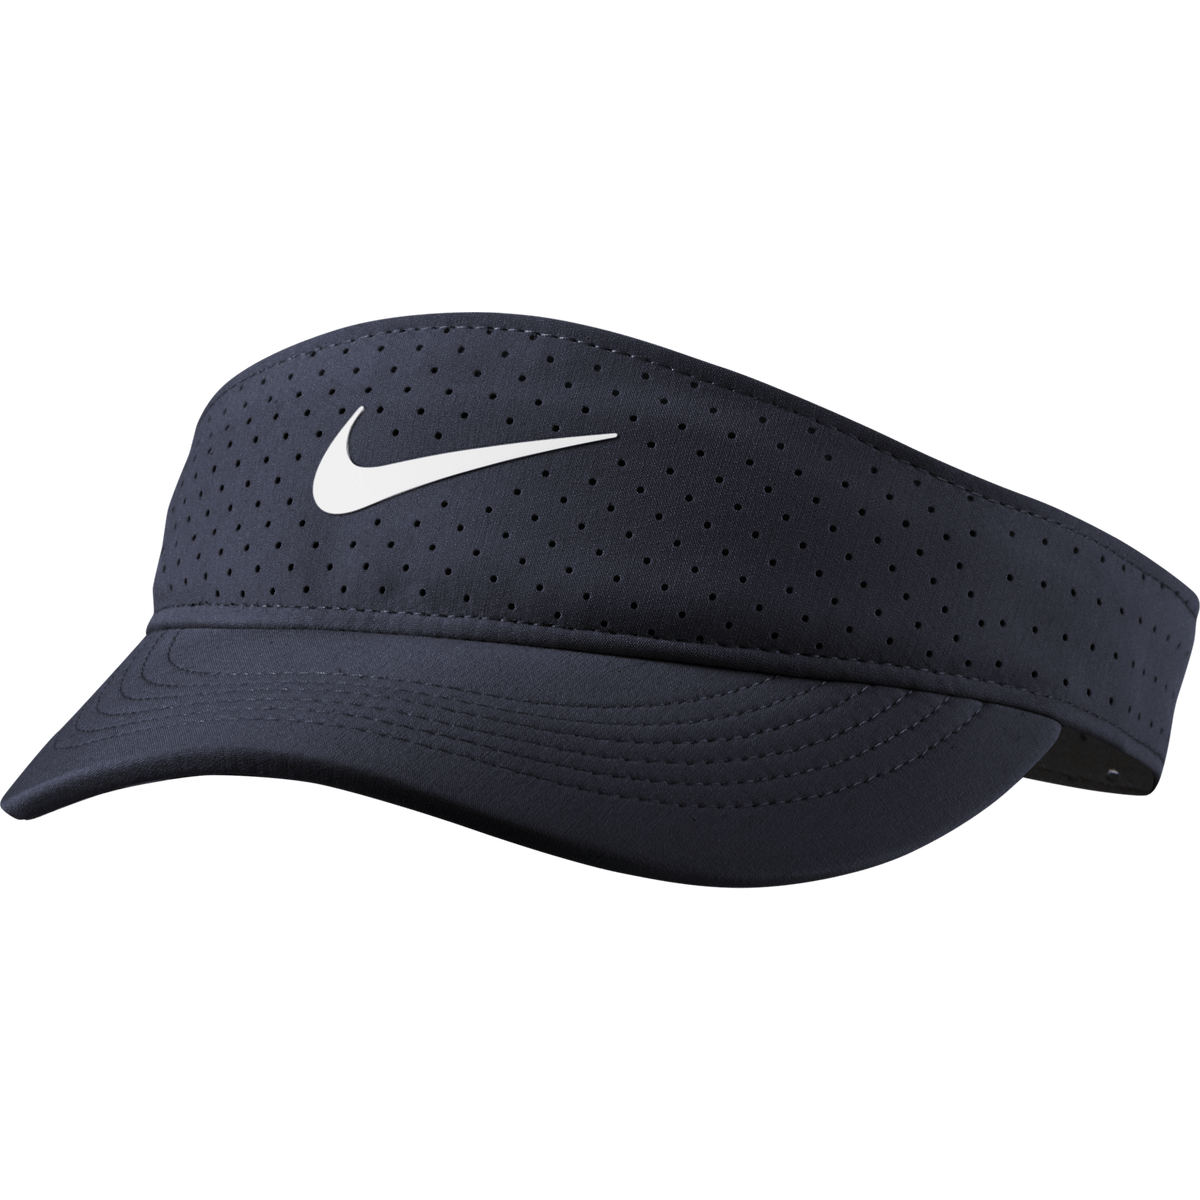 Women's Nike AeroBill Breathable Tennis Visor